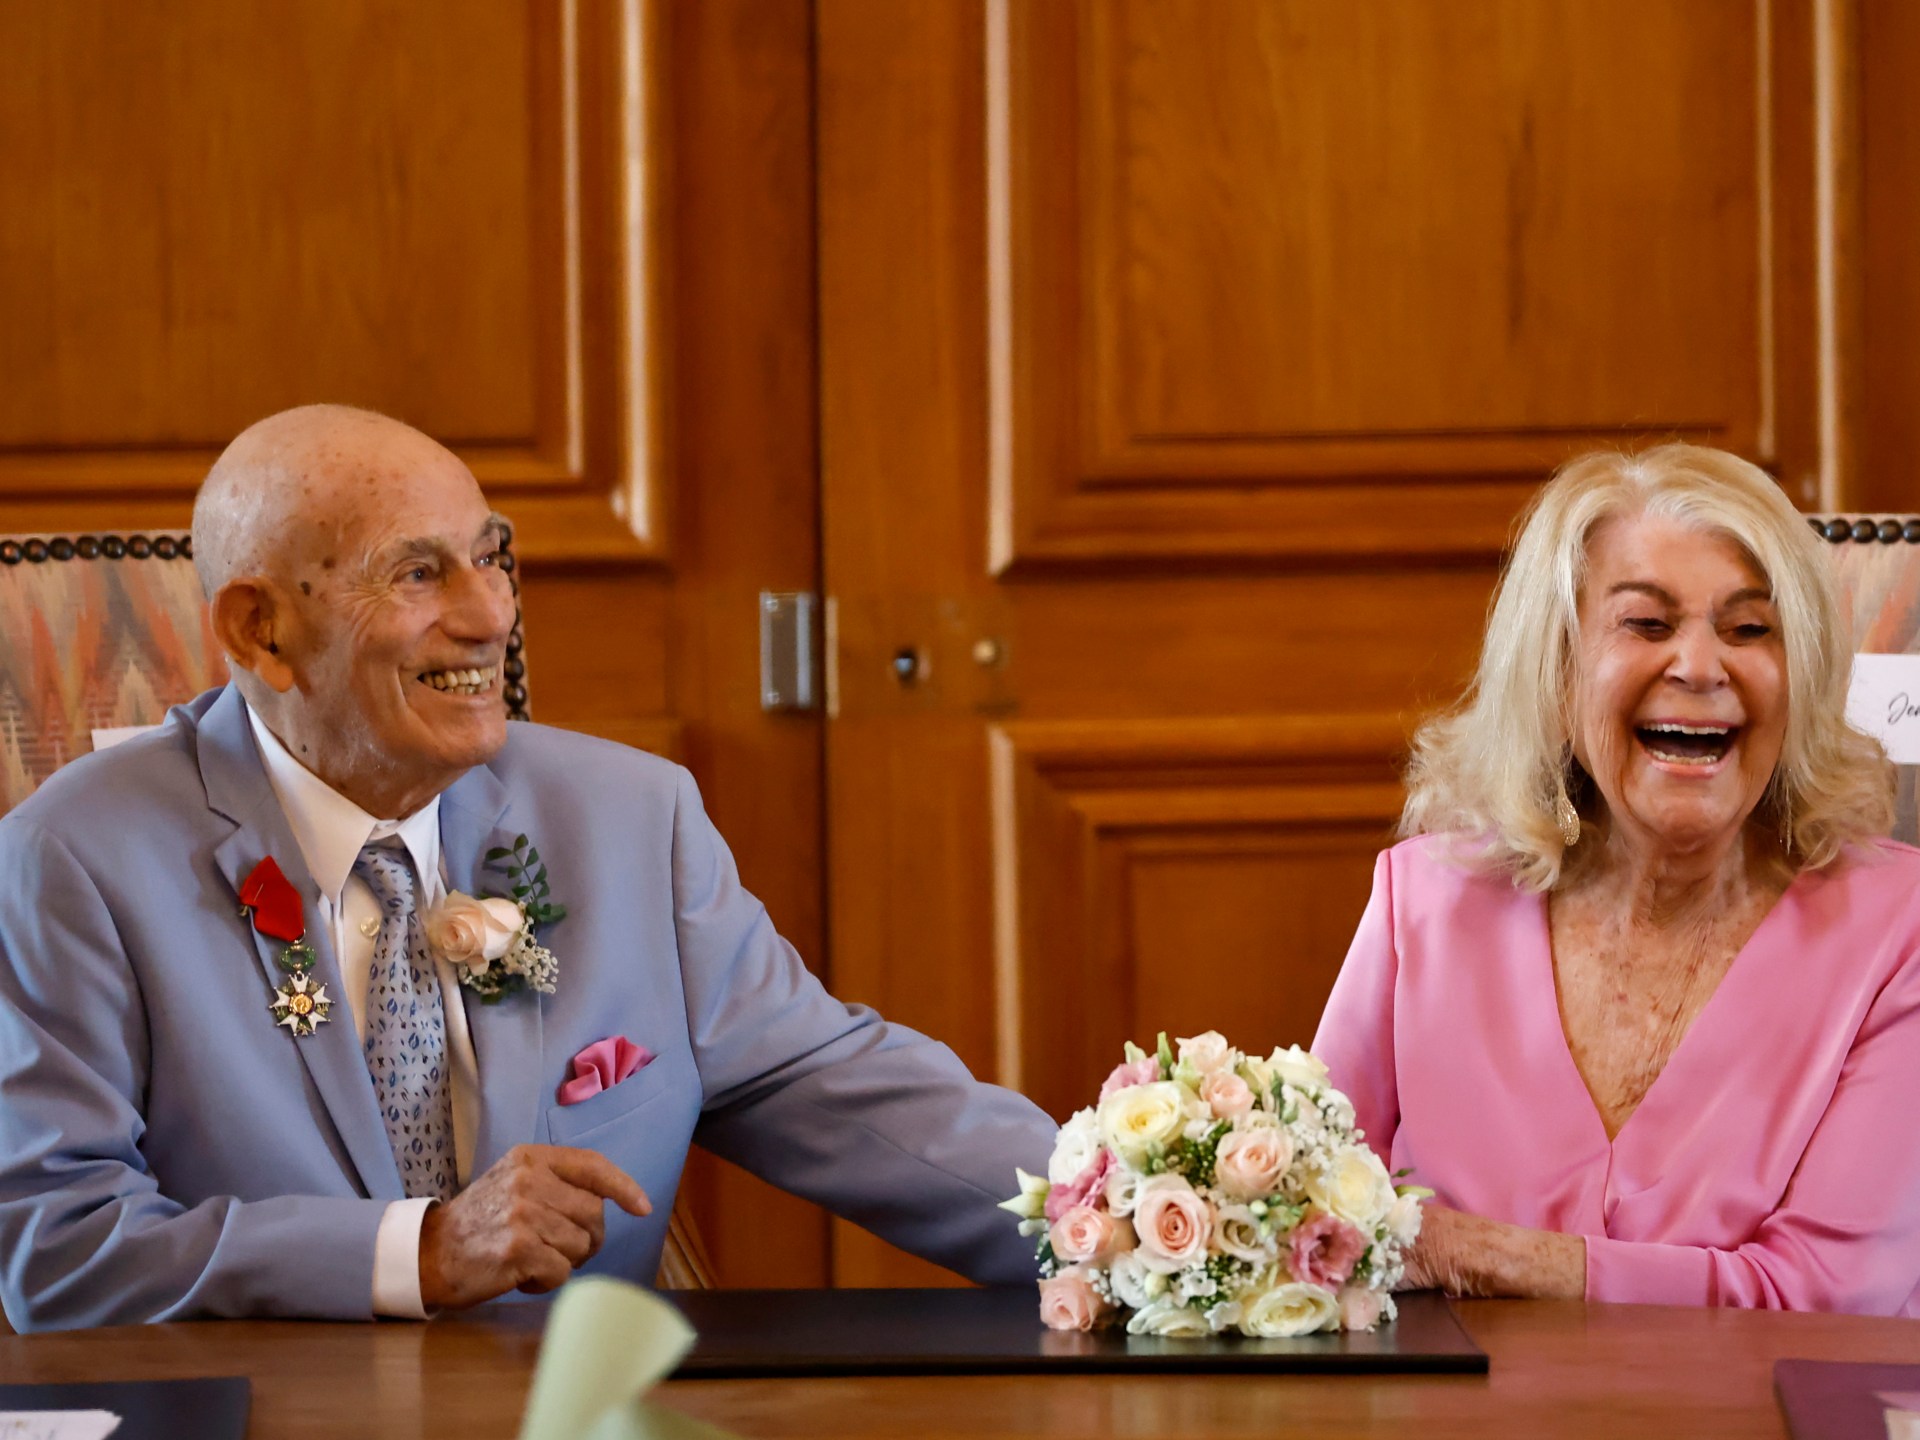 أحد المحاربين القدامى في الحرب العالمية الثانية، 100 عامًا، يتزوج من عروس تبلغ من العمر 96 عامًا بالقرب من شاطئ D-Day |  أخبار الحروب العالمية